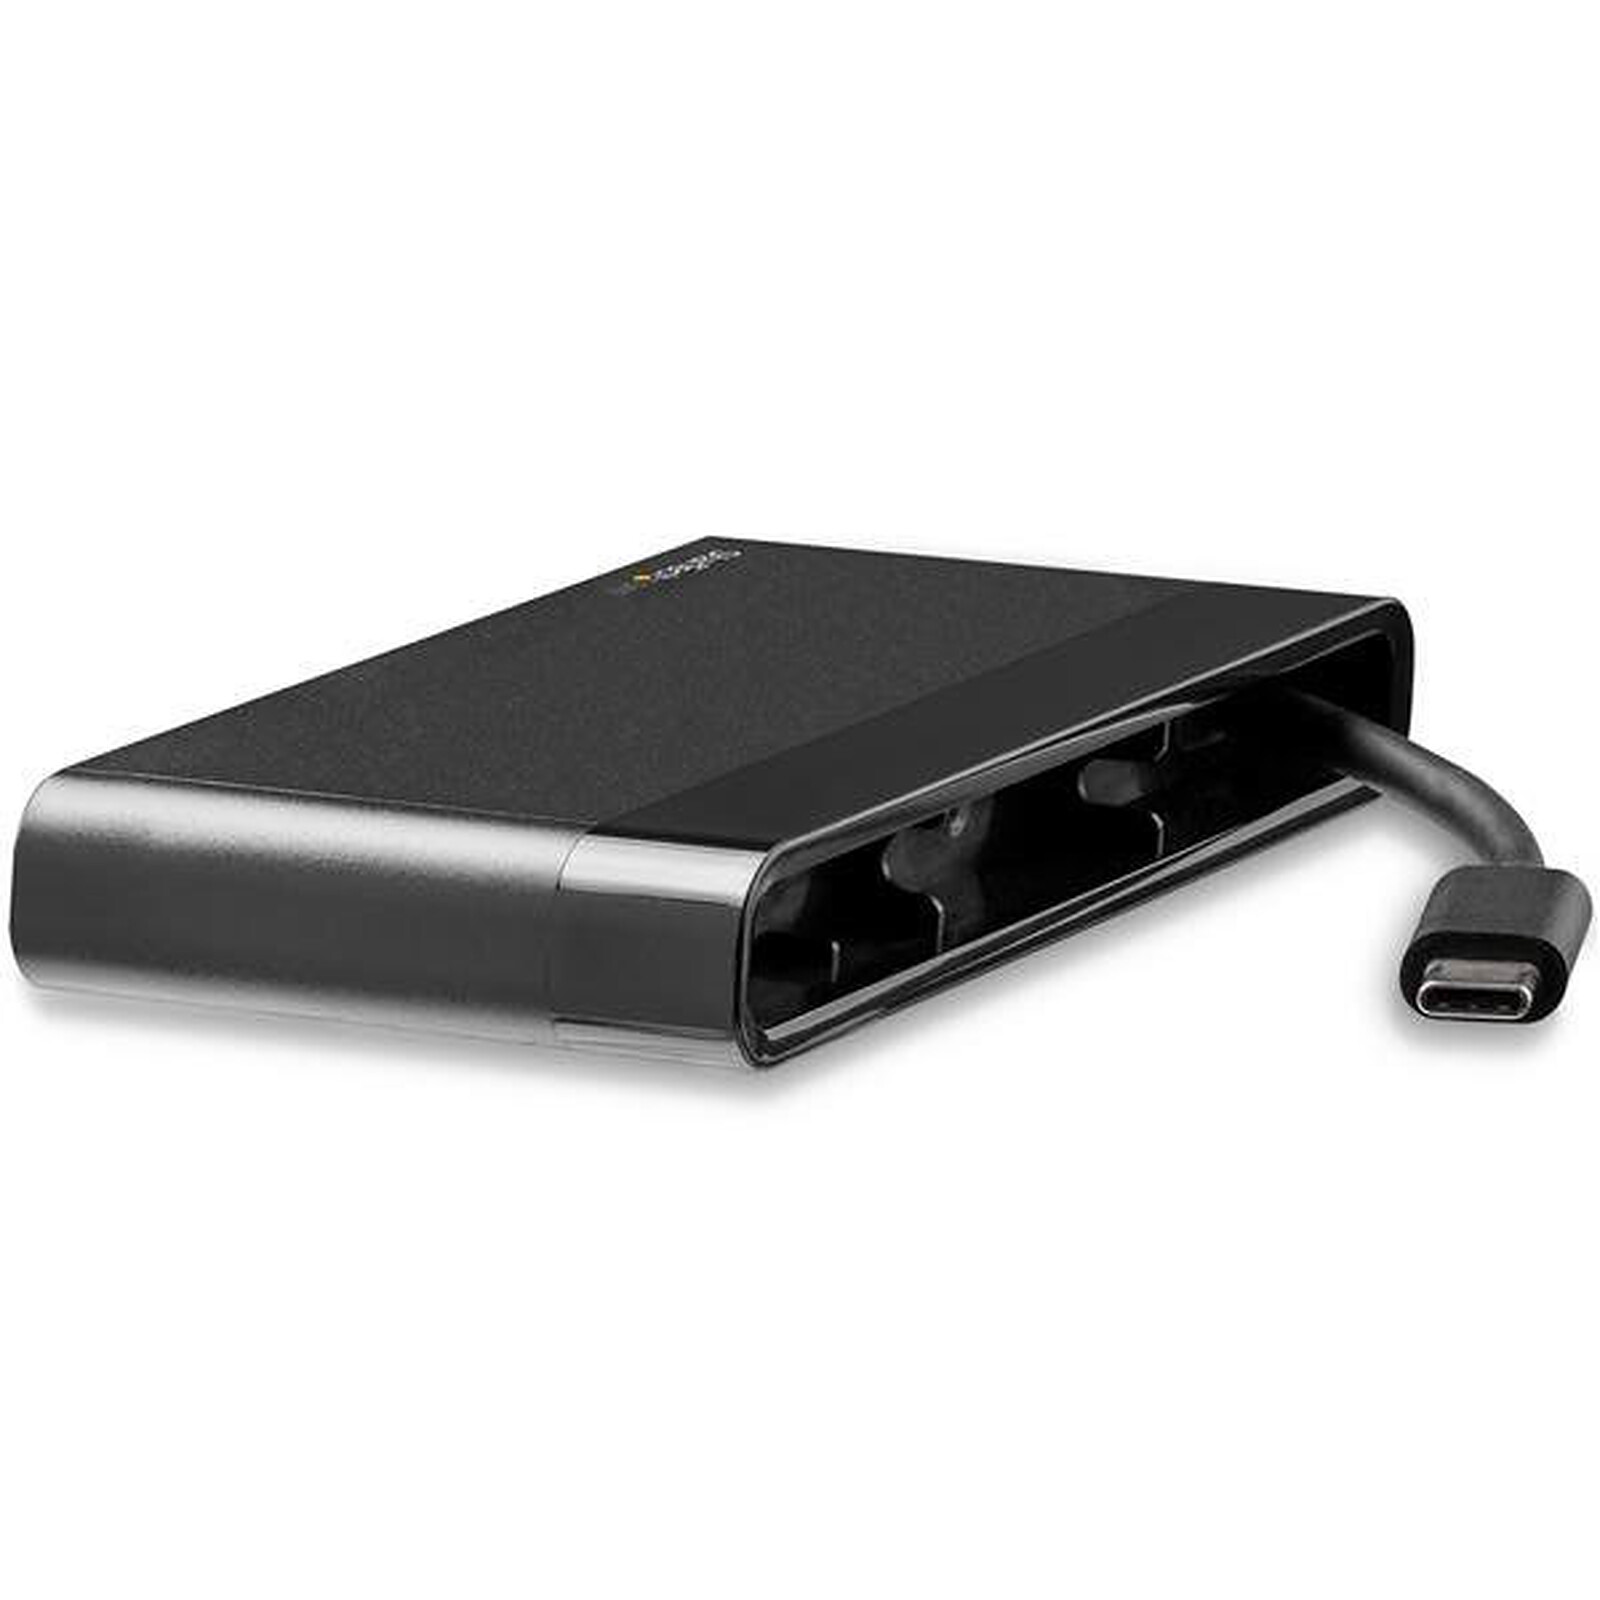 MCL Station d'accueil USB-C avec 5 ports + 1x emplacement pour SSD - Station  d'accueil PC portable - Garantie 3 ans LDLC